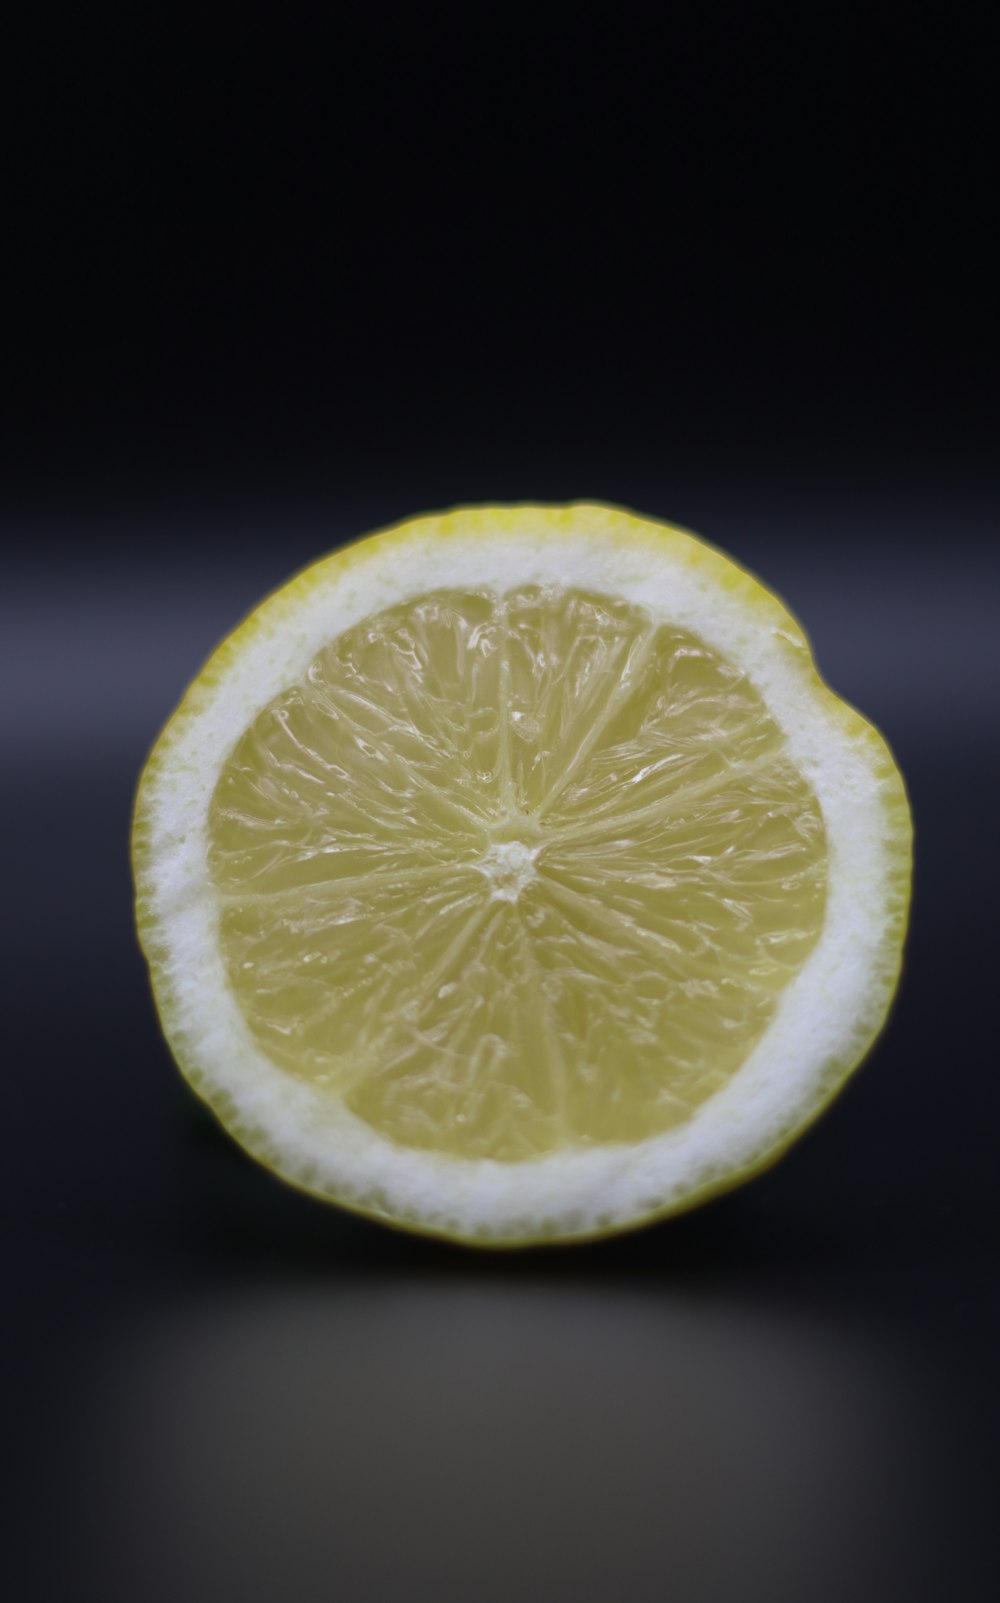 Frutto giallo del limone con sfondo bianco